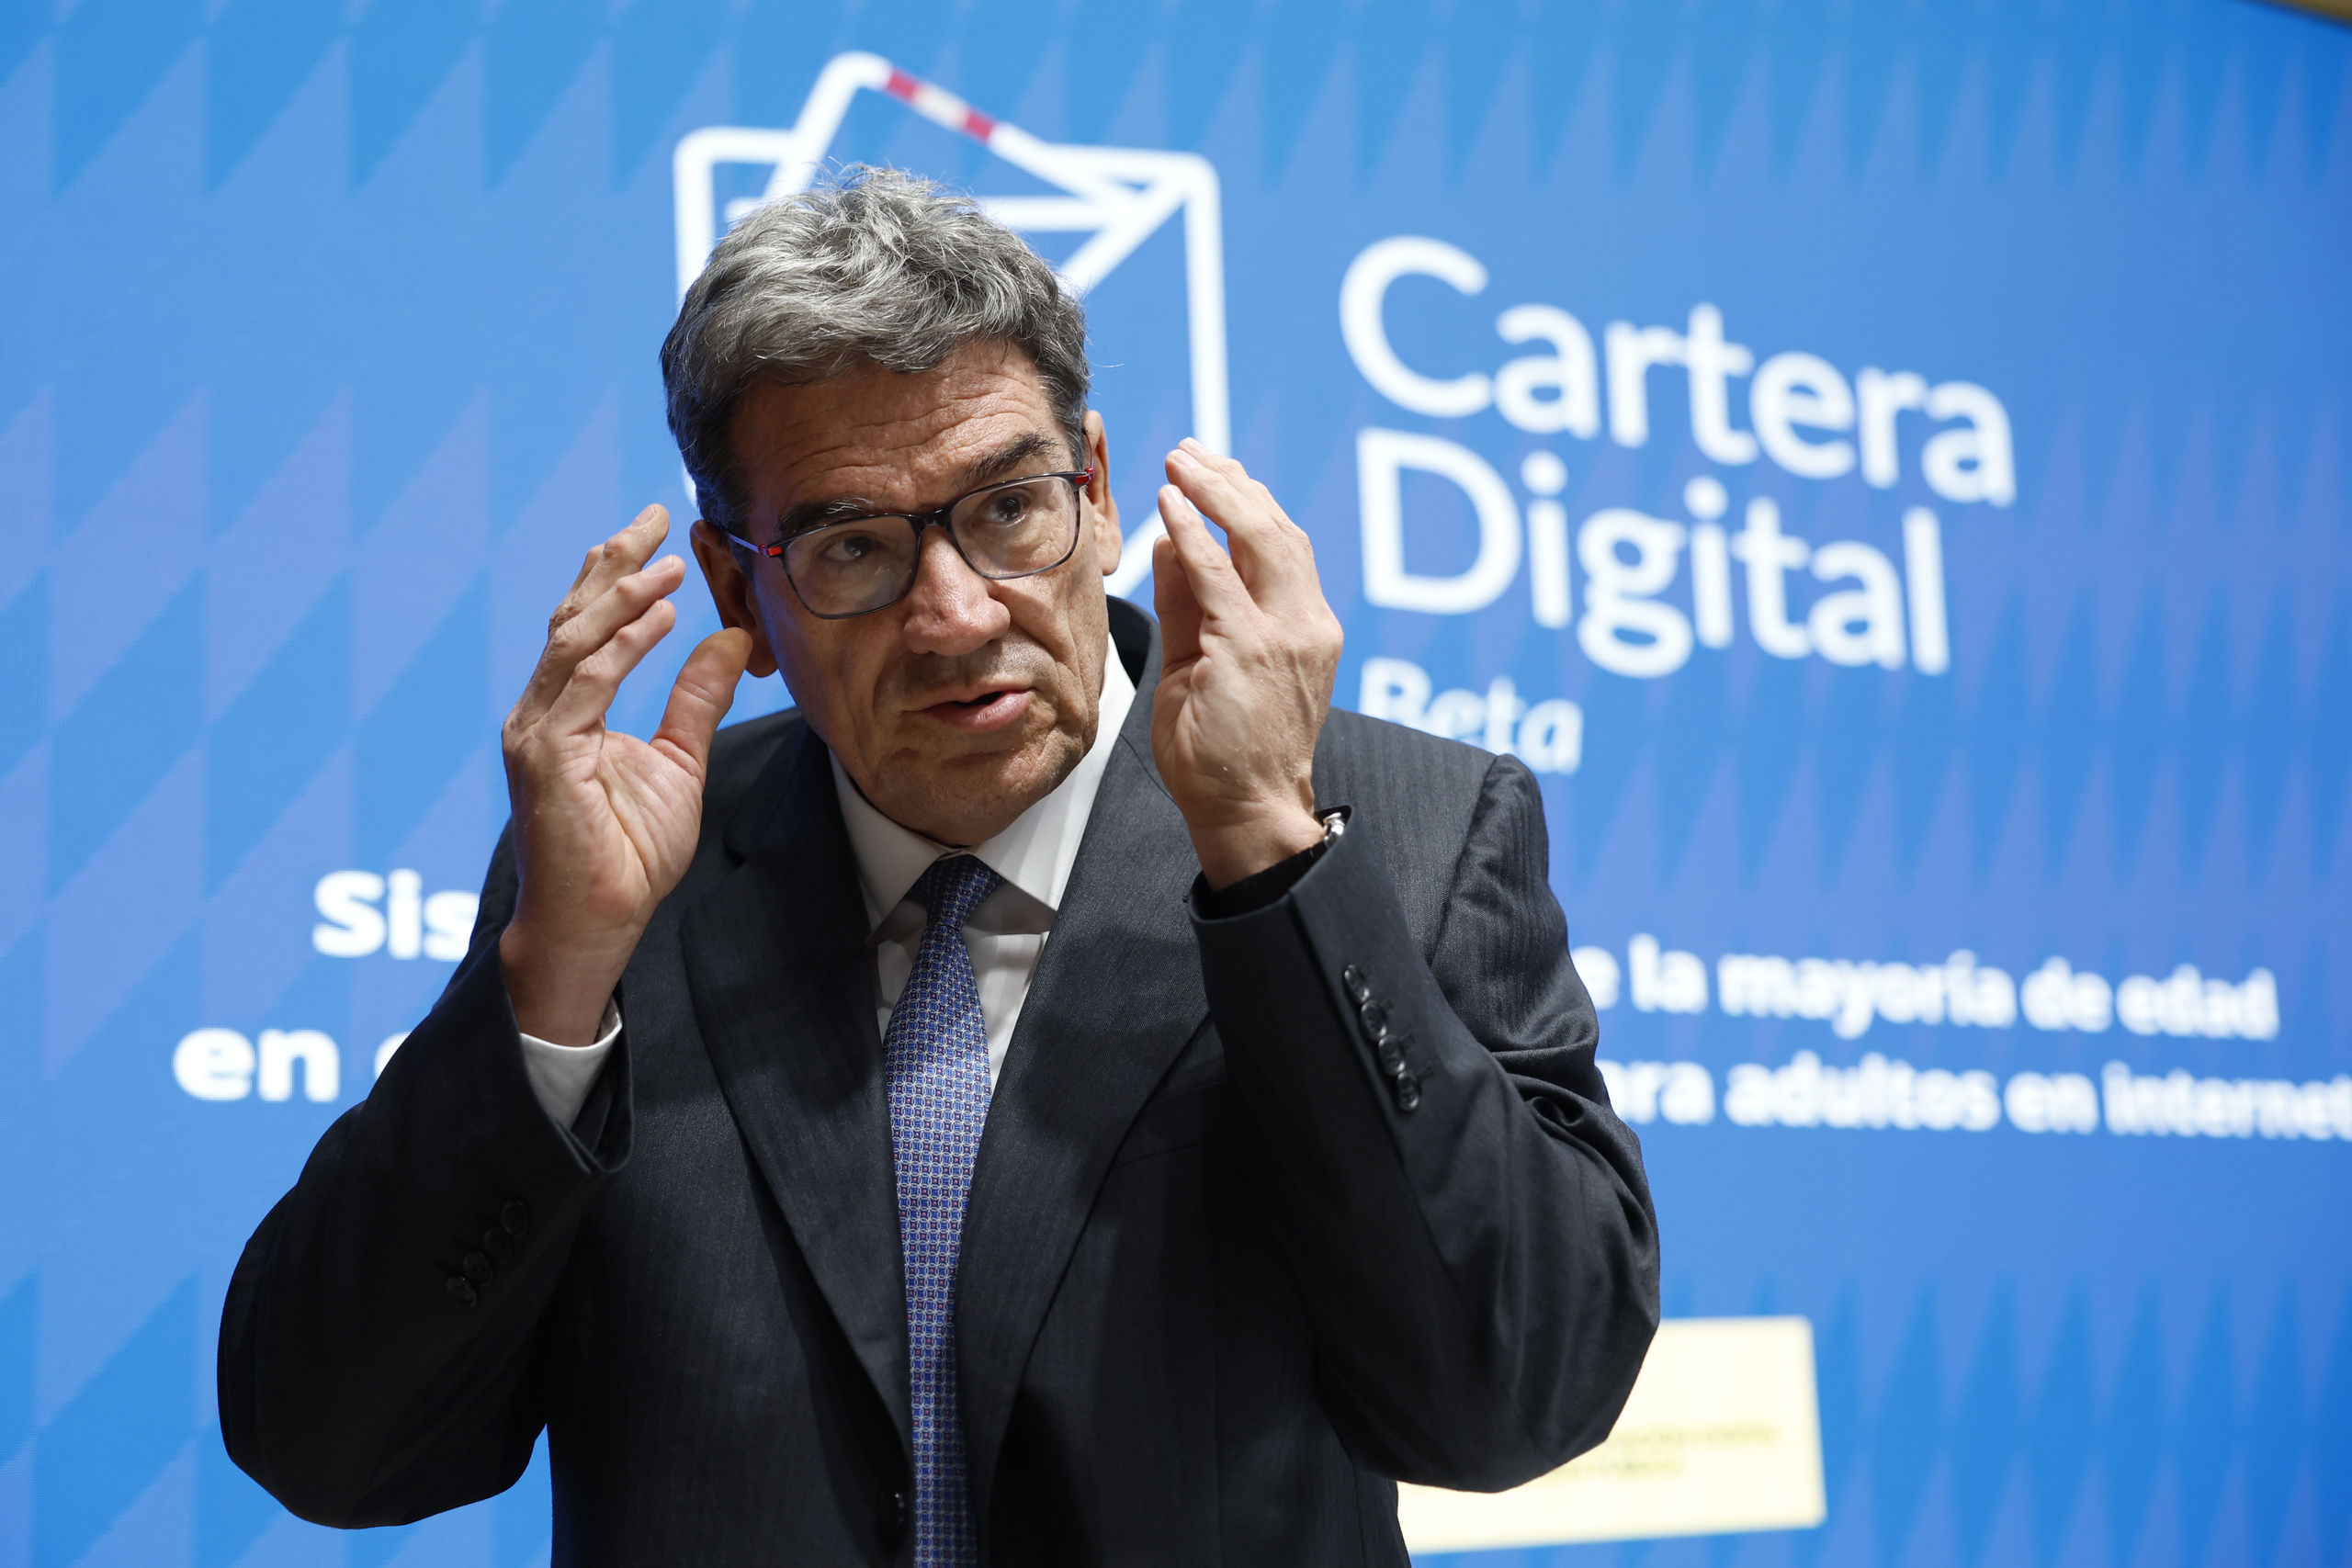 El Gobierno exigirá una credencial digital para acceder a contenido porno en webs españolas